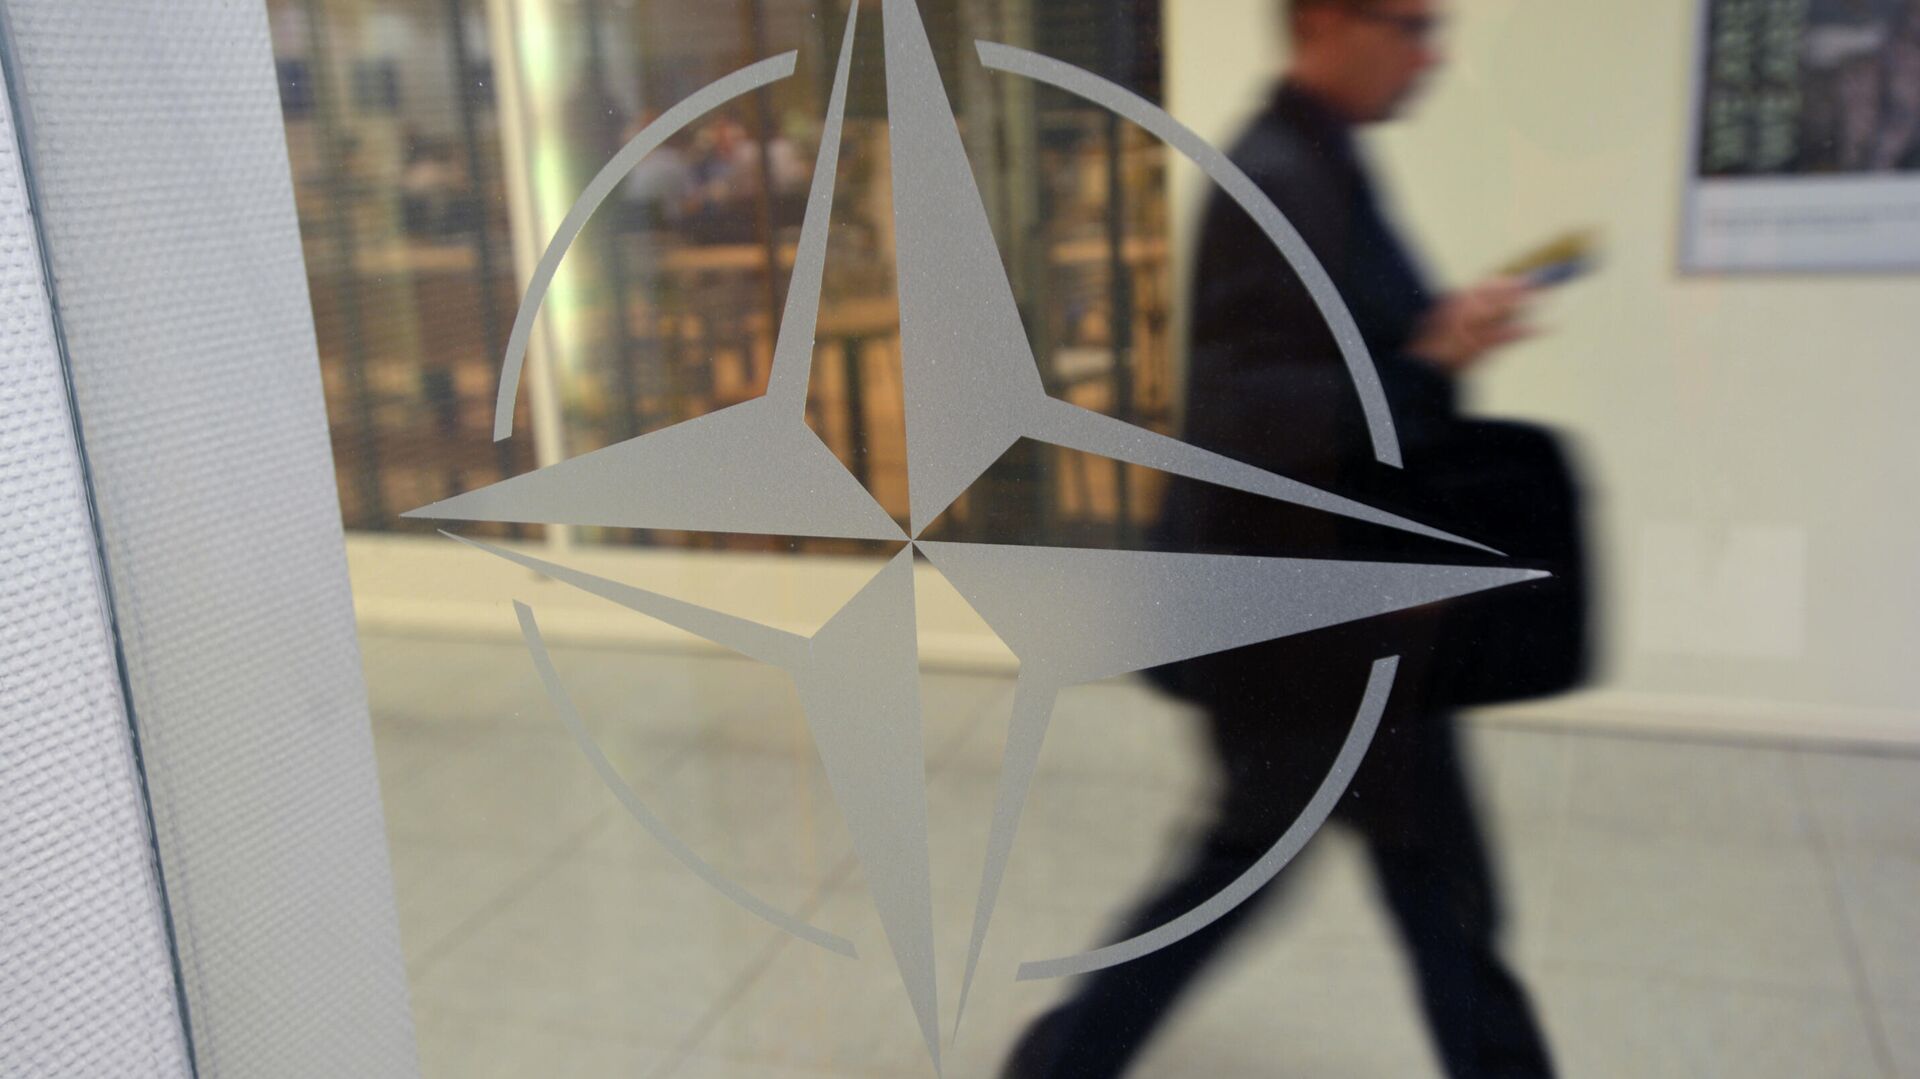 Эмблема организации в штаб-квартире НАТО в Брюсселе. - Sputnik Абхазия, 1920, 26.12.2021